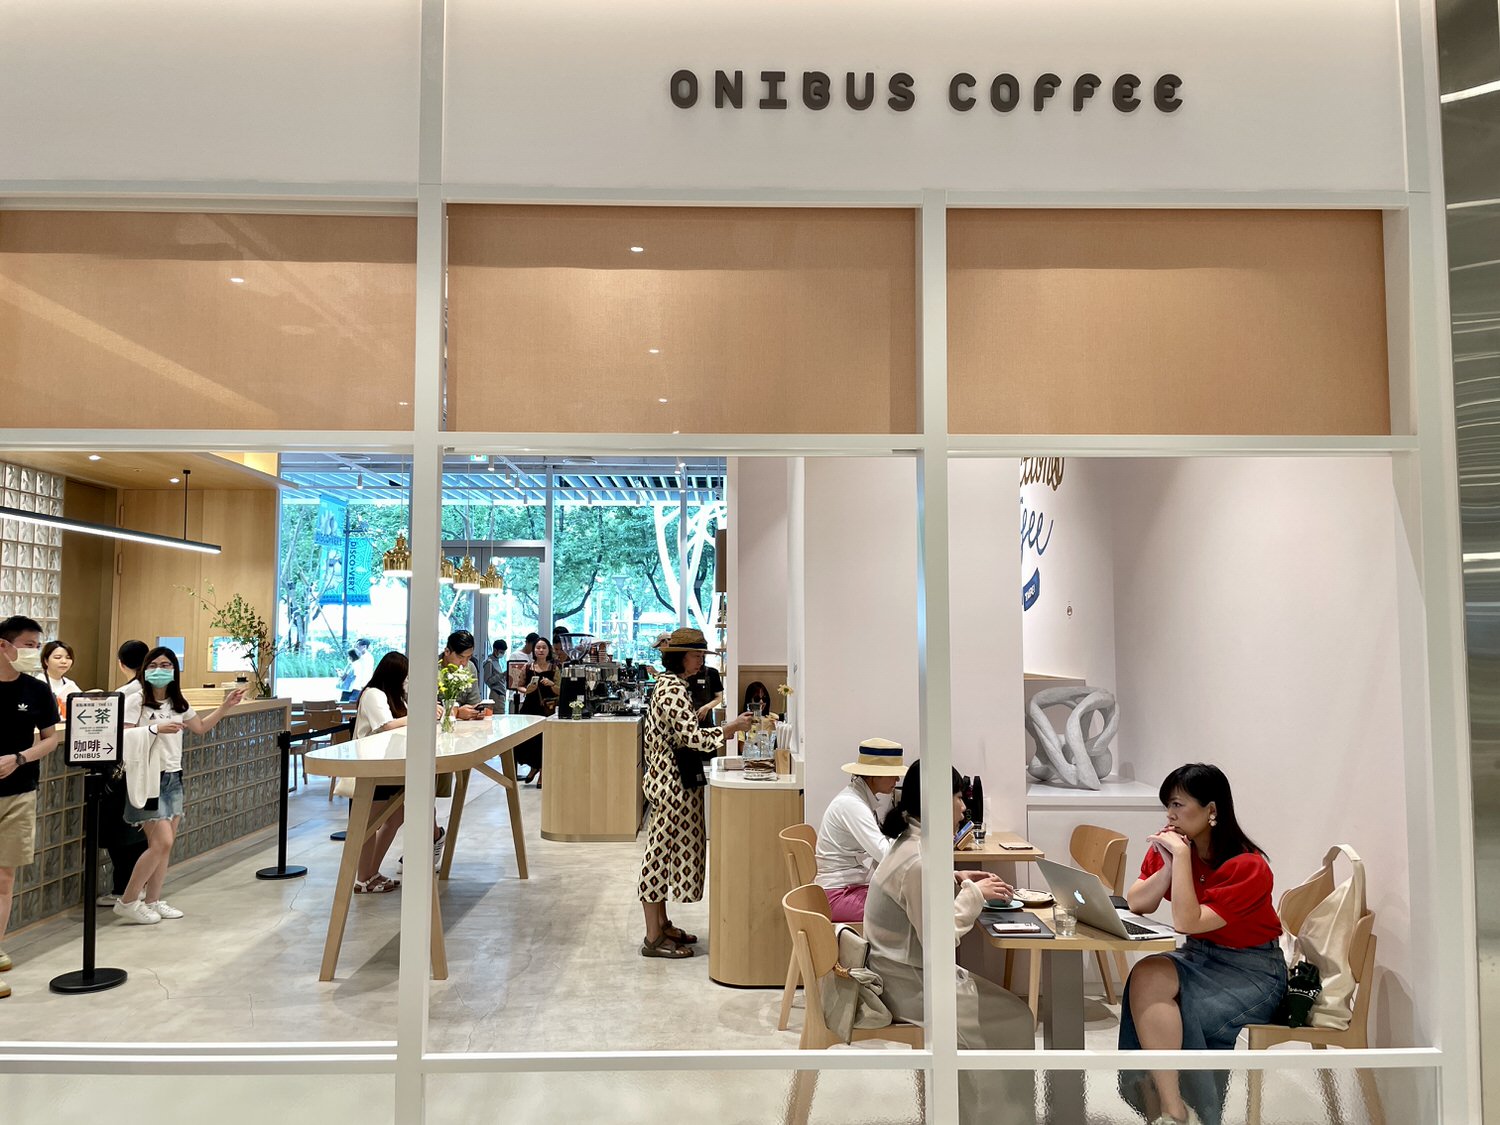 ONIBUS coffee